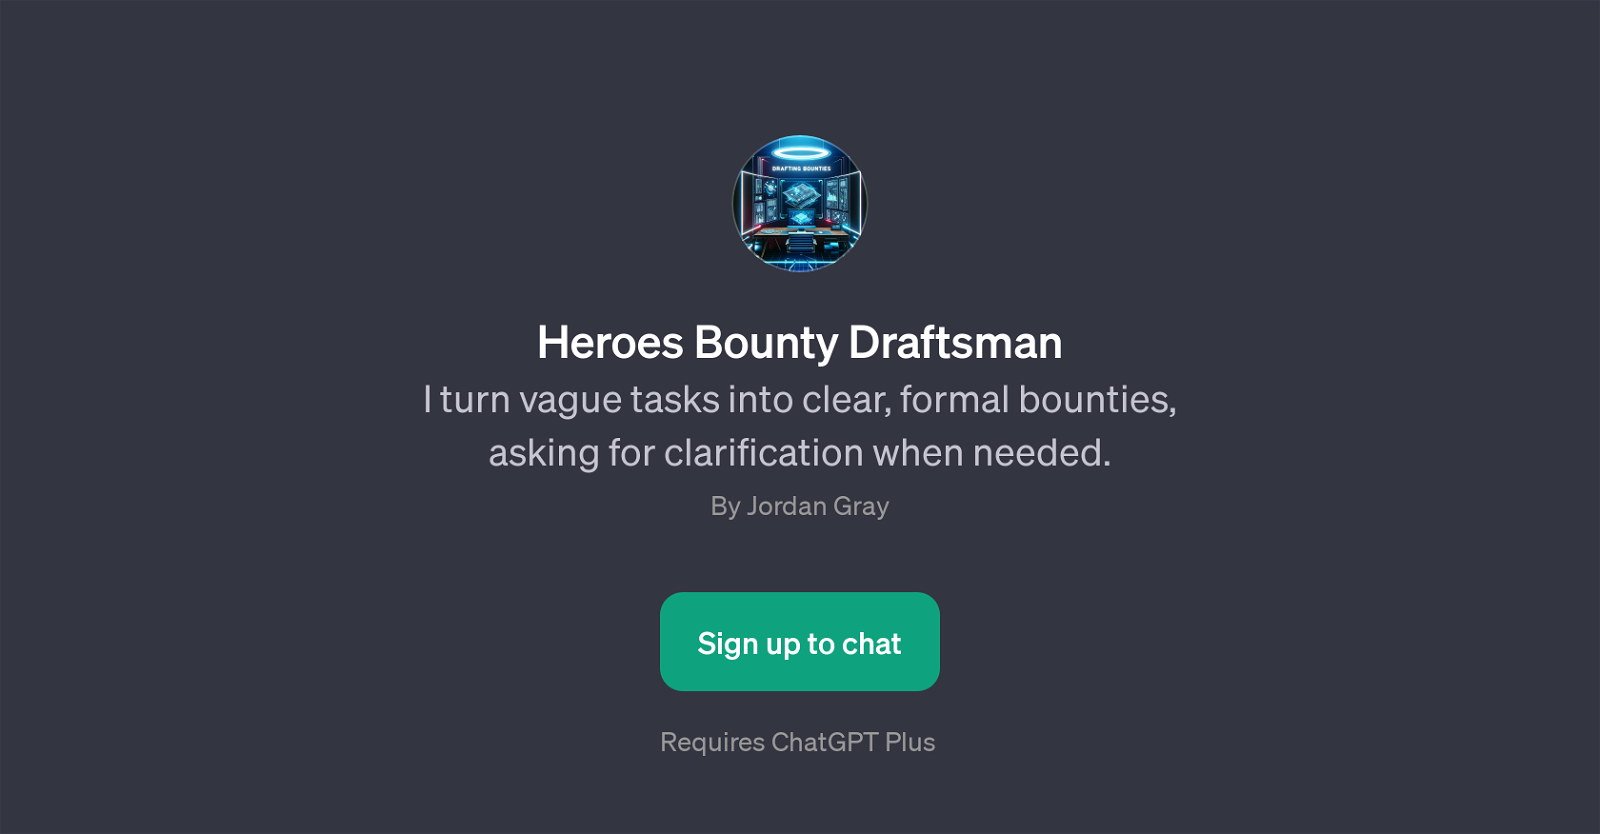 Heroes Bounty Draftsman website